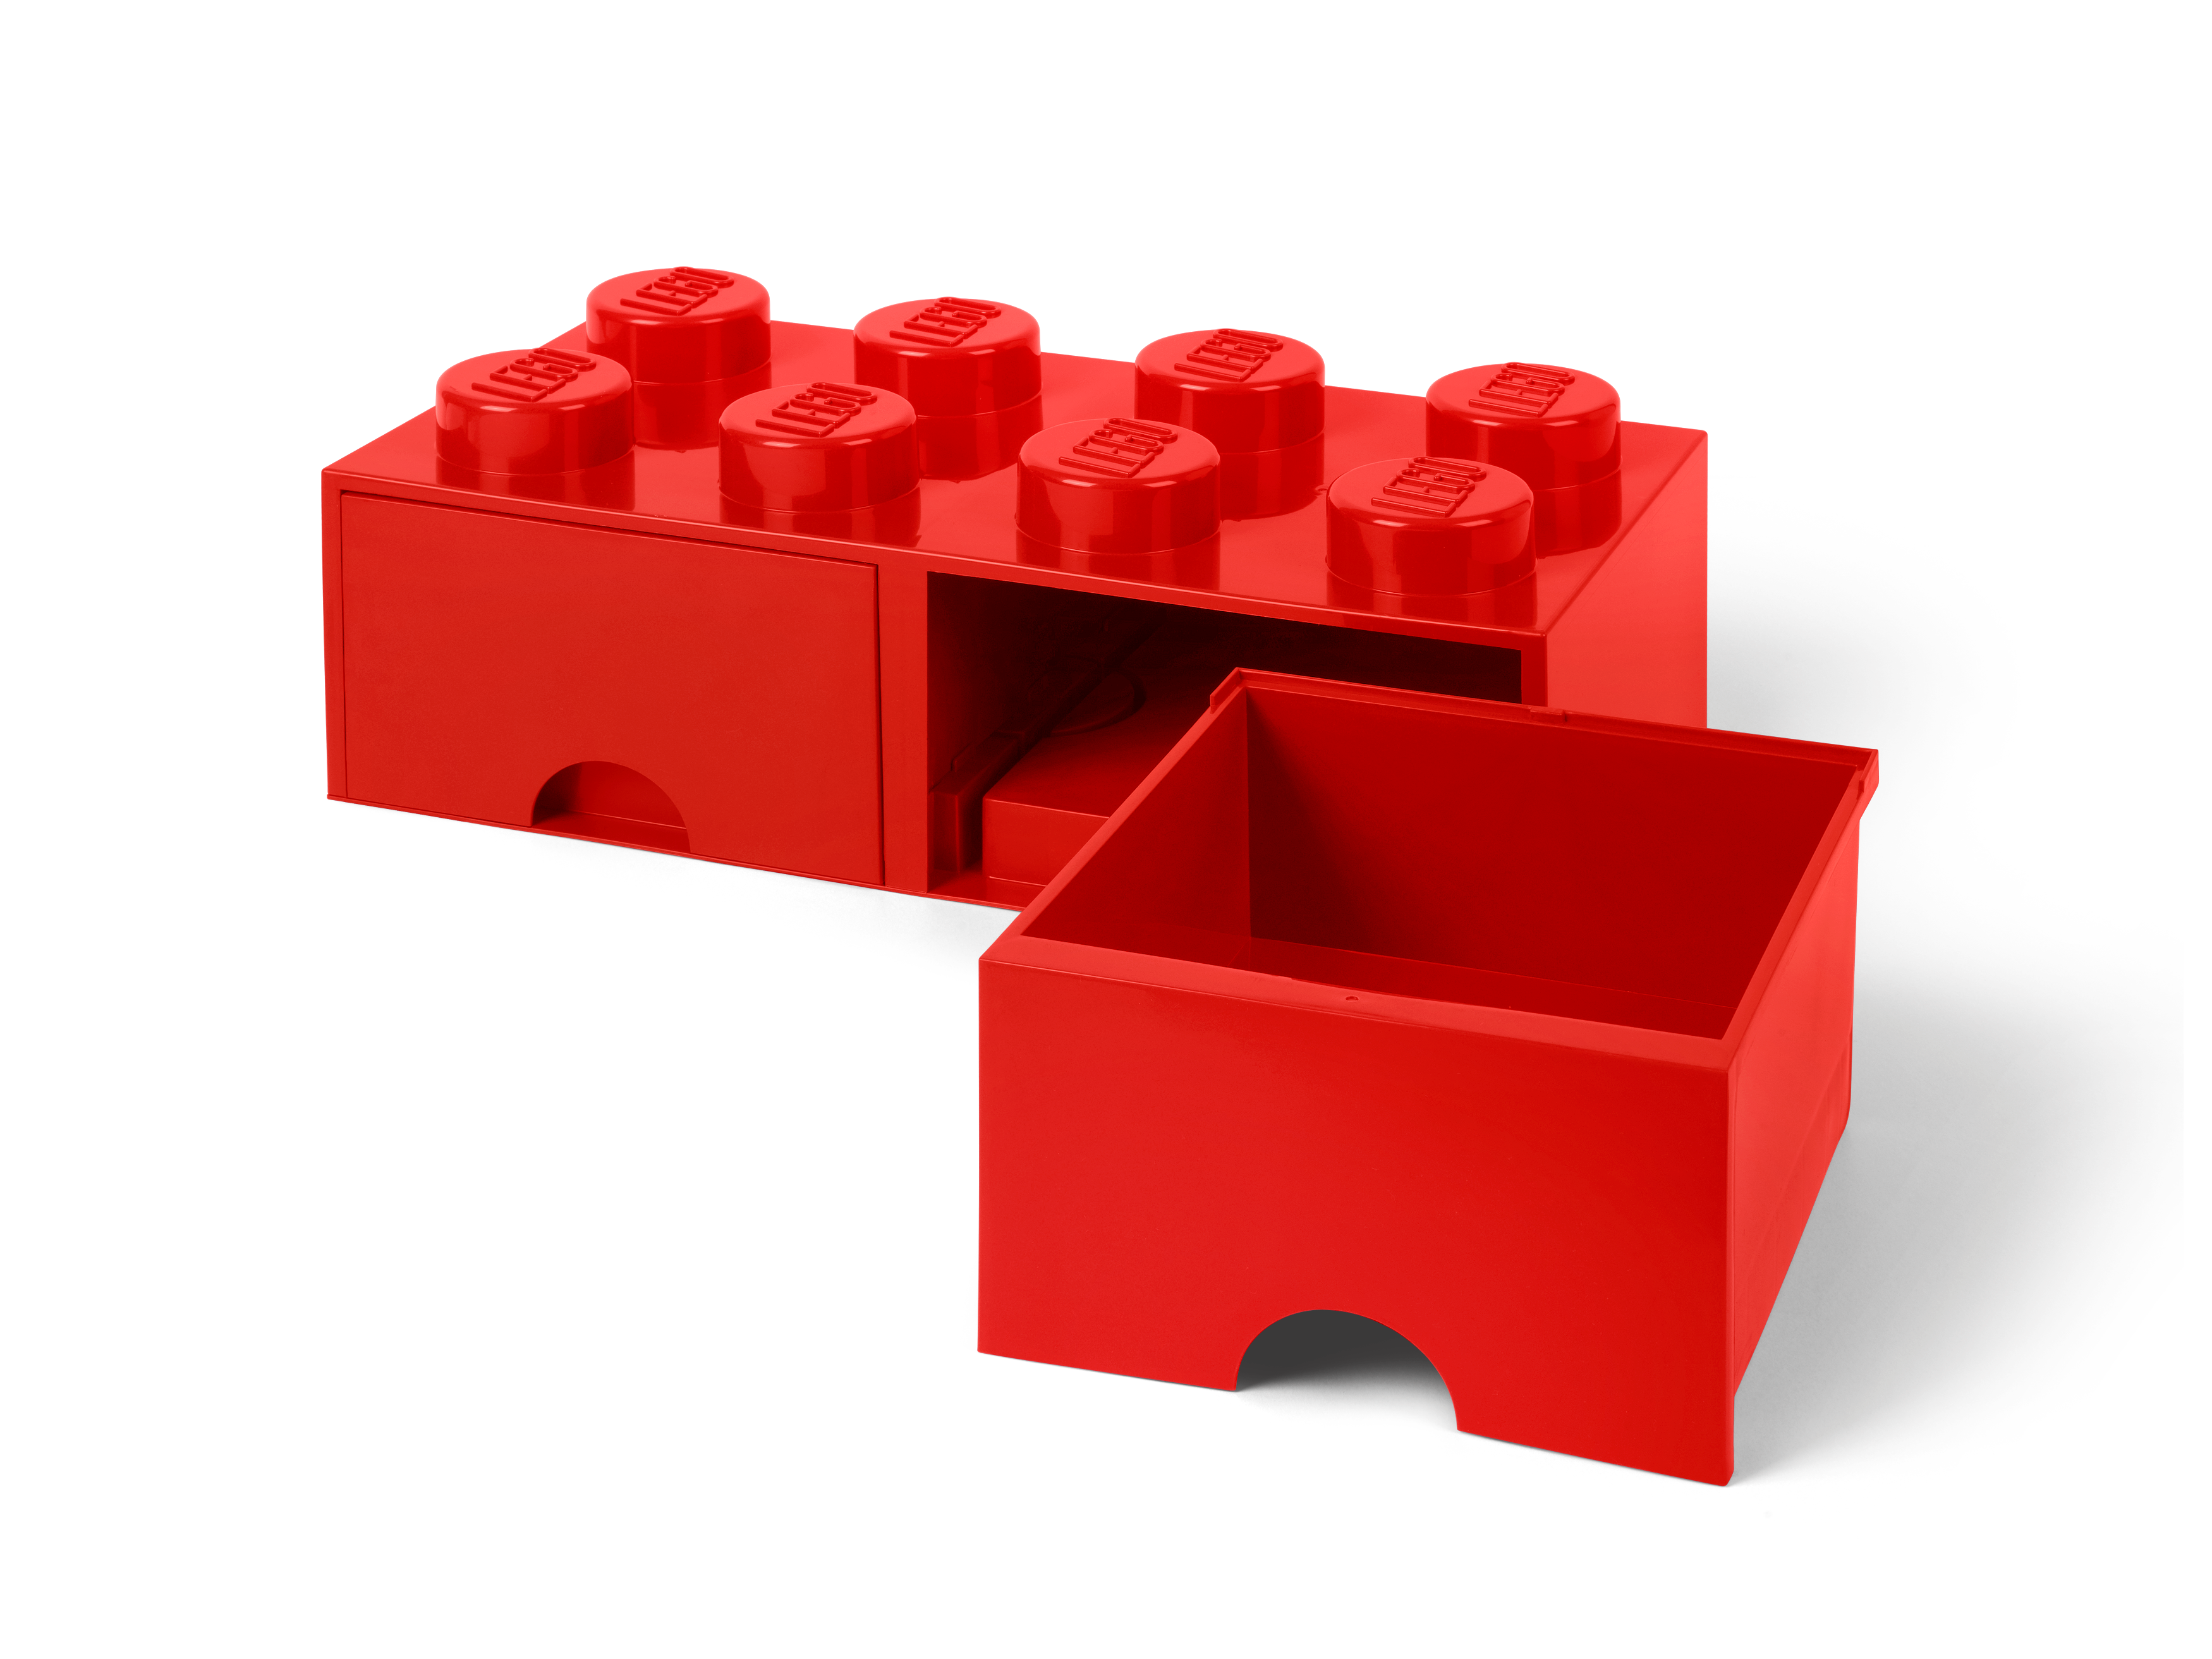 LEGO Caja de almacenamiento de ladrillo rojo